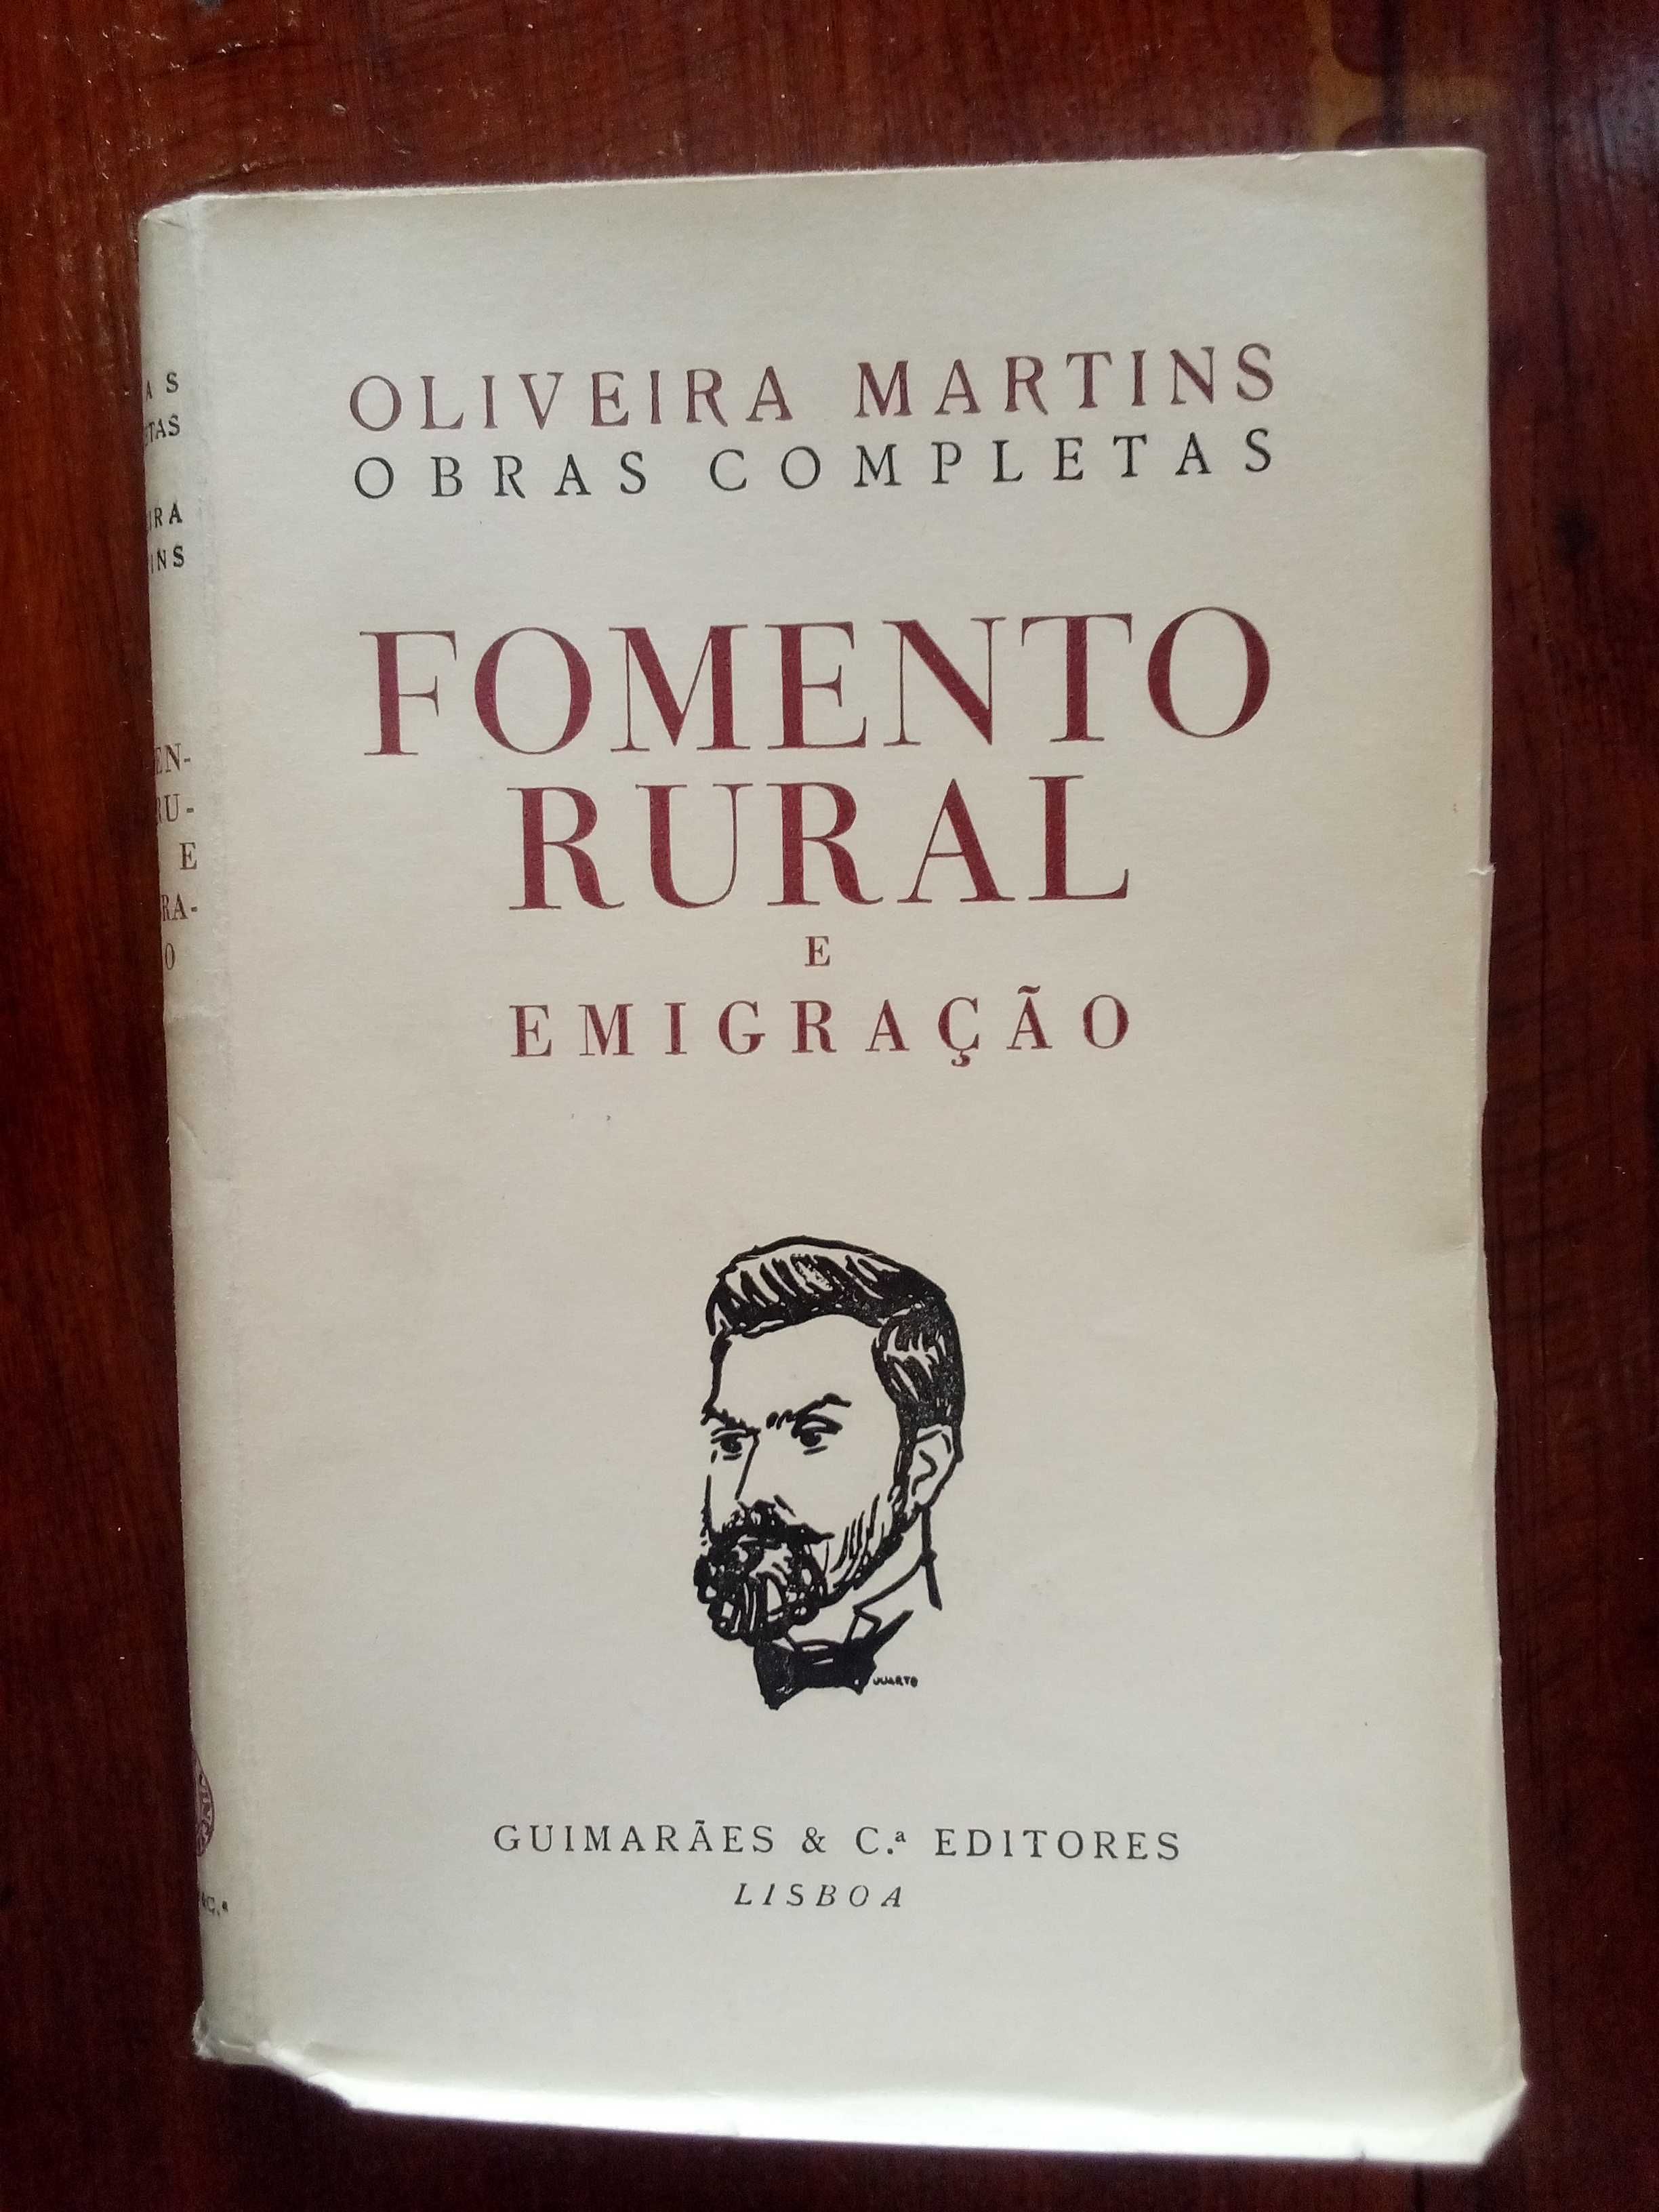 Oliveira Martins - Fomento rural e emigração